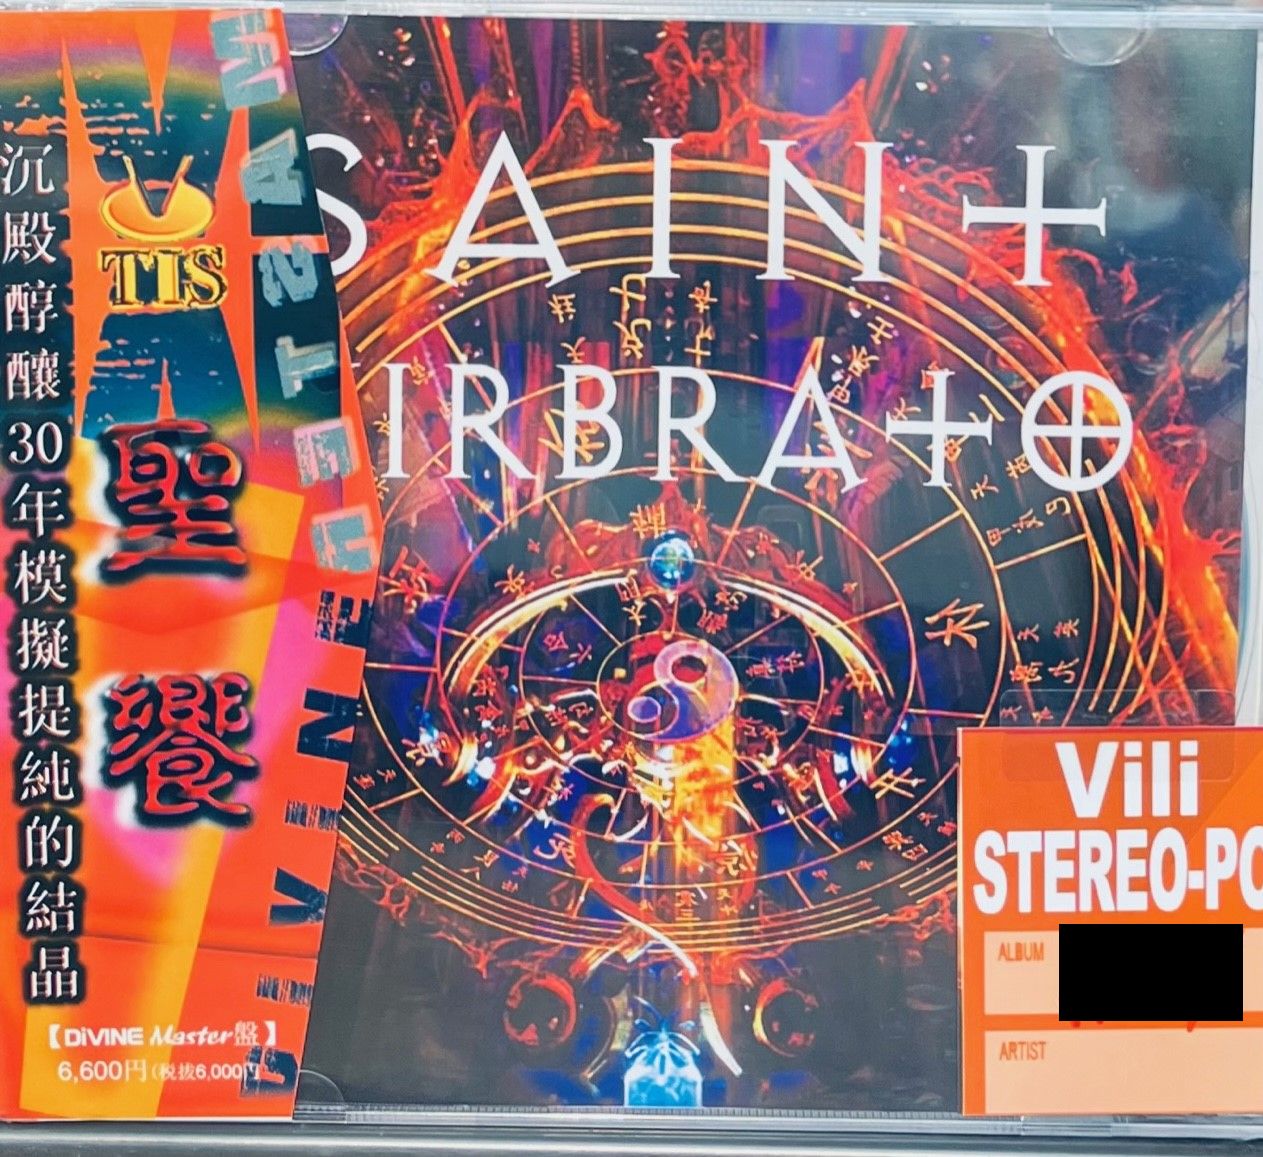 SAN VIRBRA 聖饗  TIS LABEL (CD)